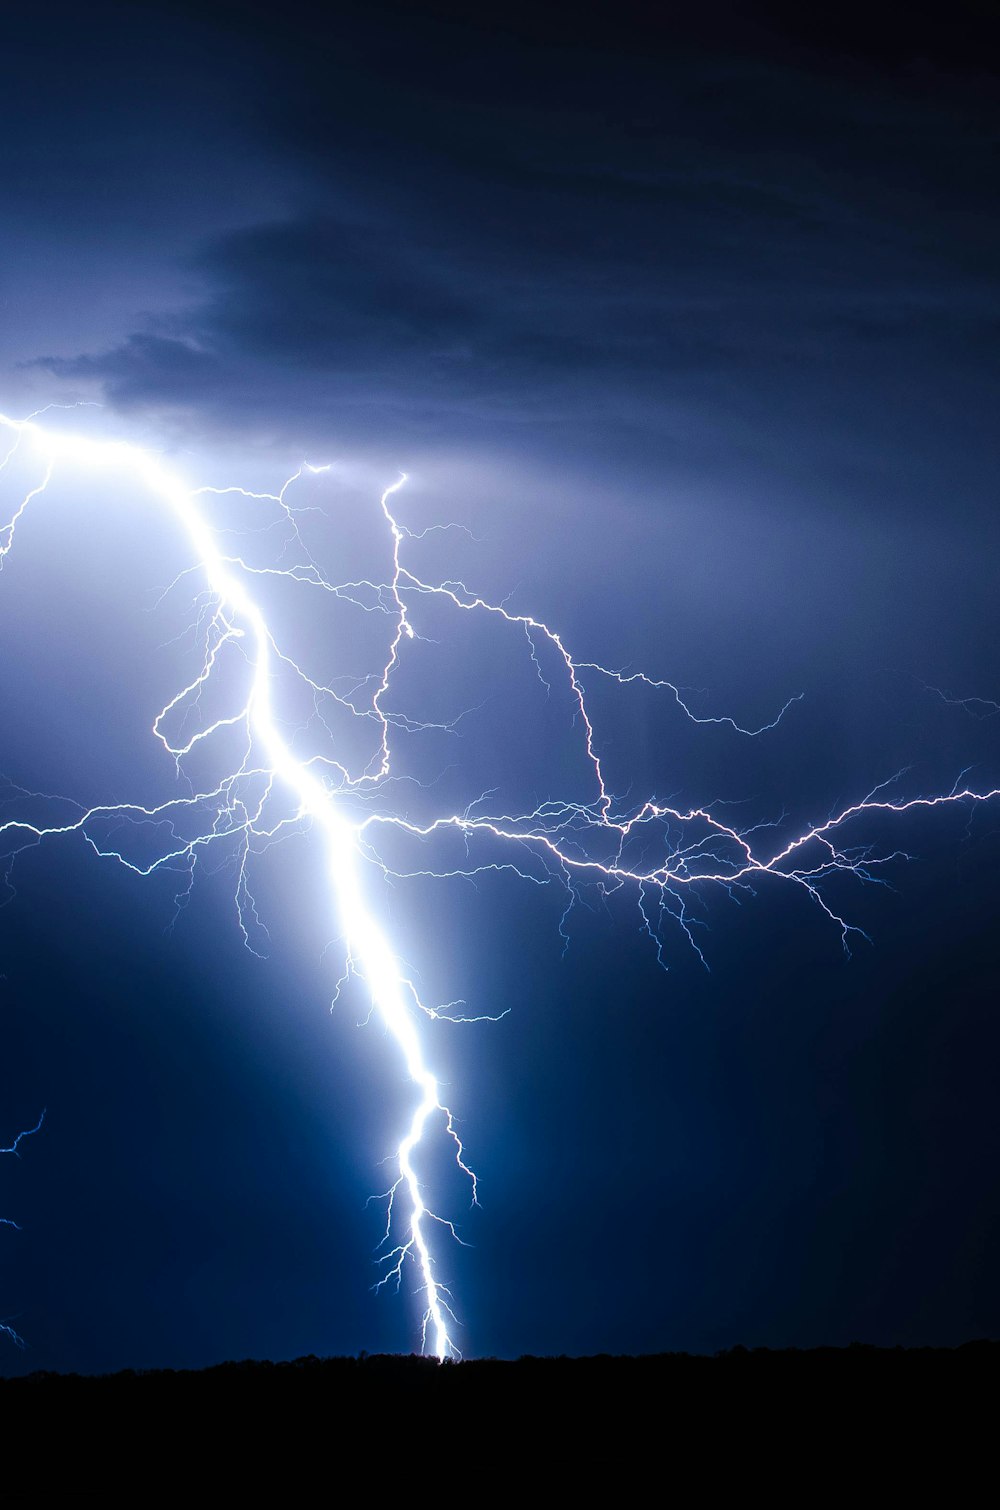 A lightning bolt in a storm